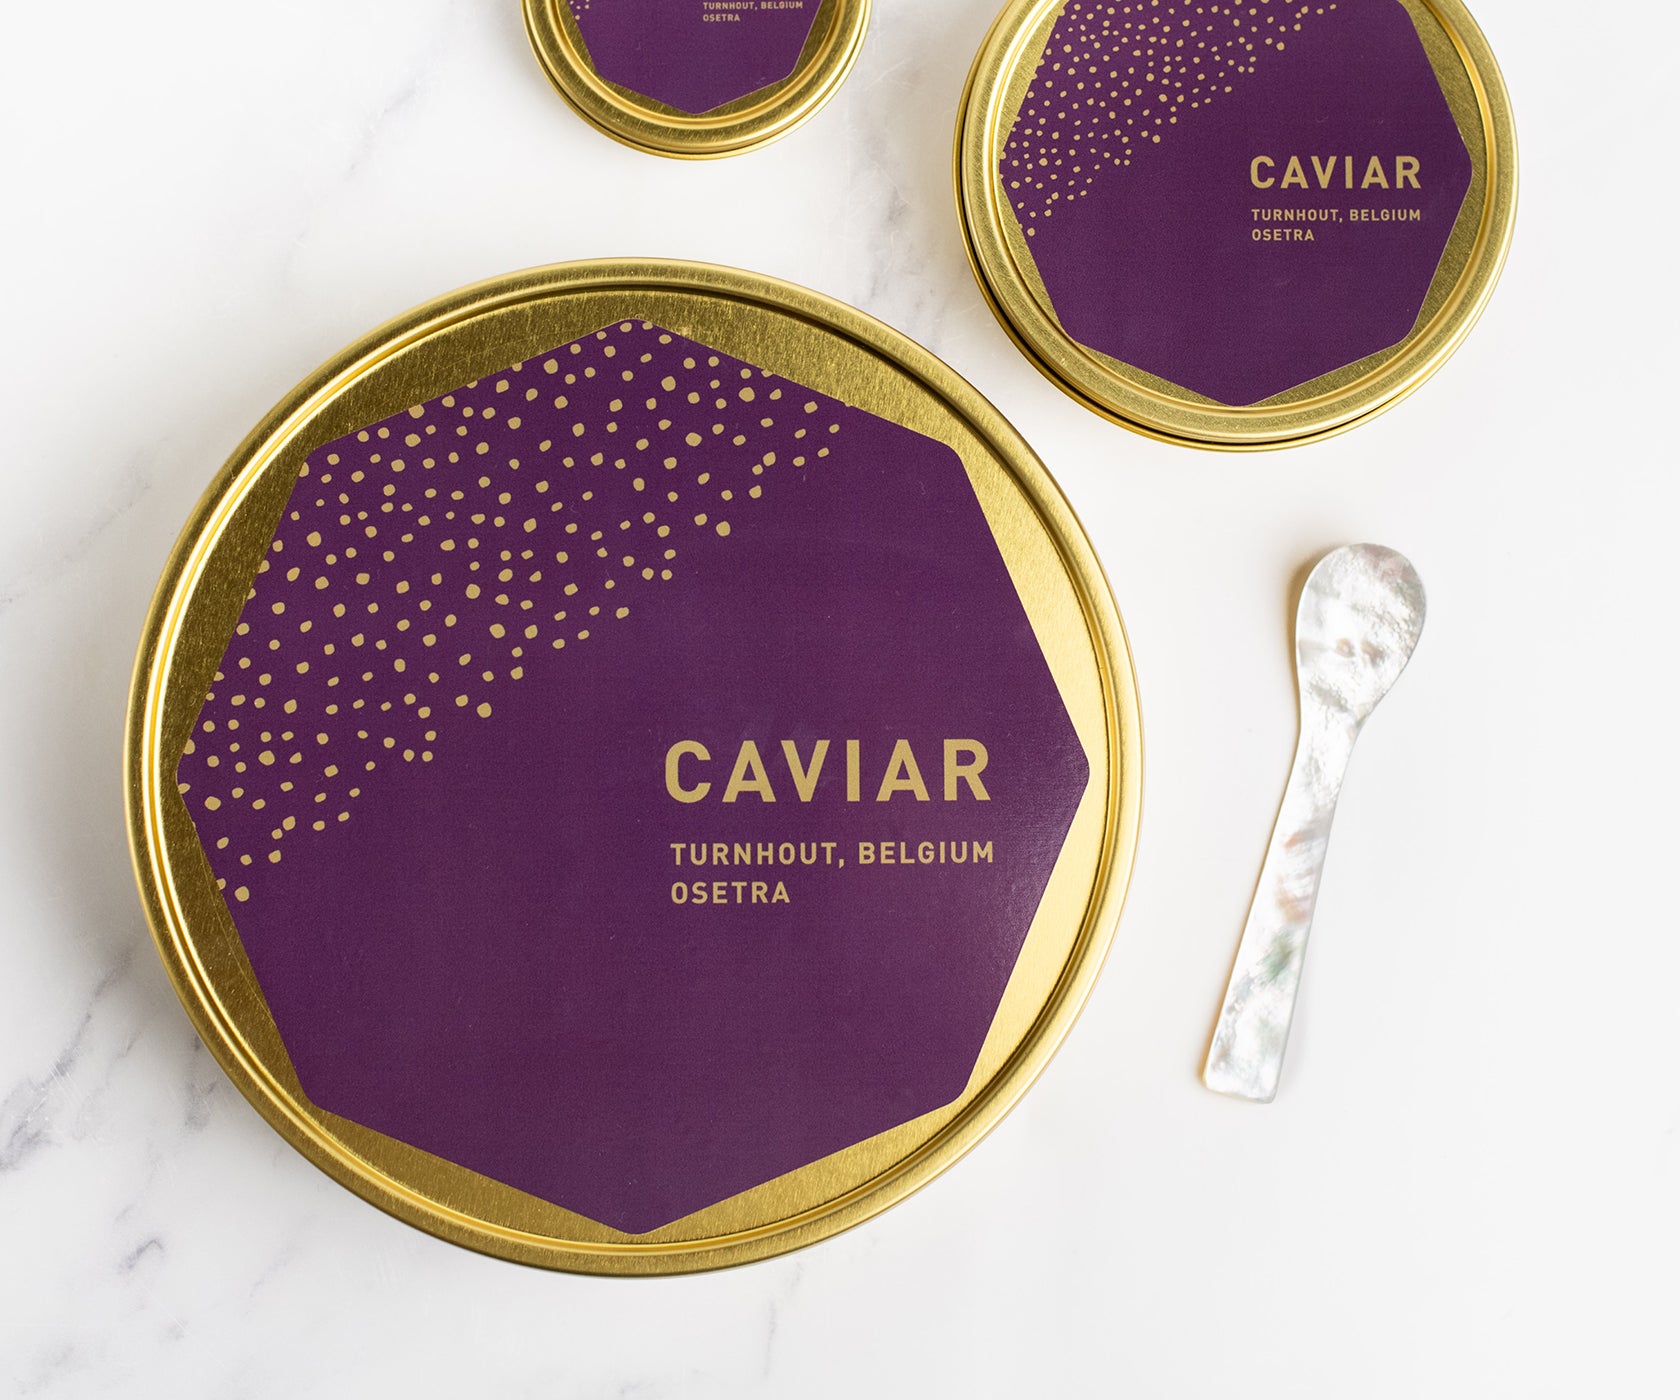 Royal Belgian Osetra Caviar from Turnhout, Belgium